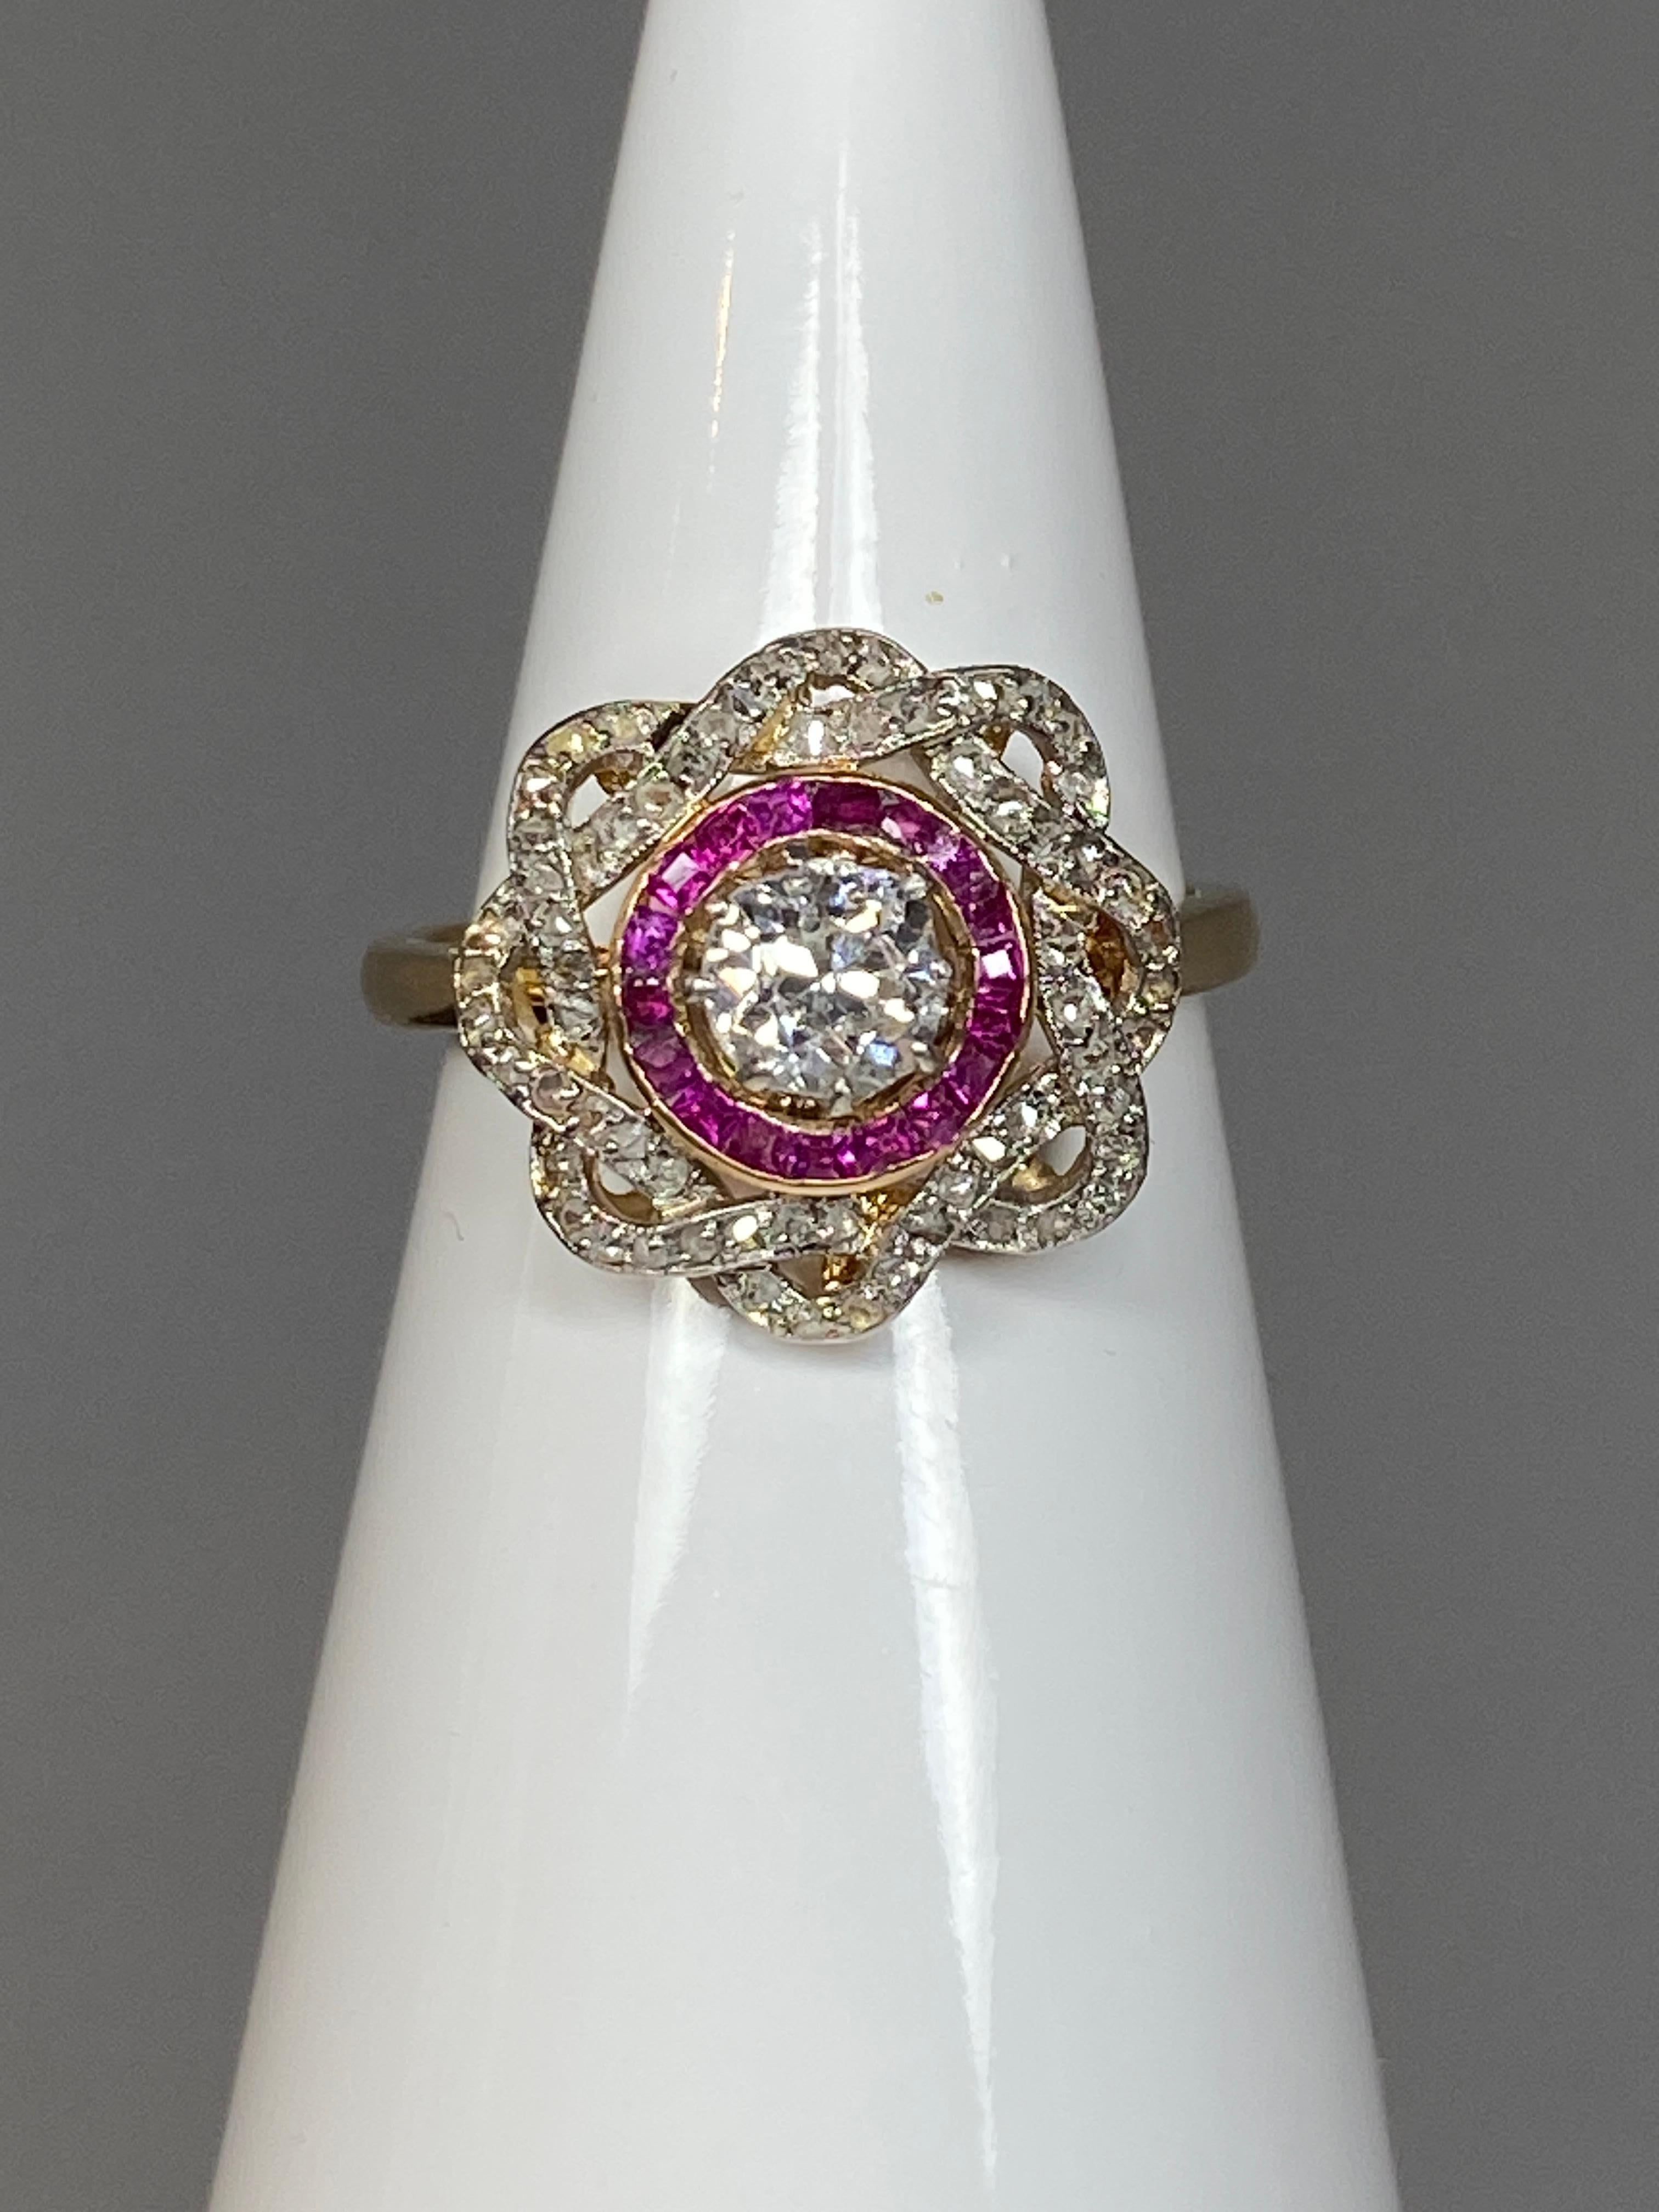 Ravissante bague en or 18 carats ornée au centre d’un diamant de taille ancienne pesant 0.30/0.40 carat environ, entouré d’une ligne de rubis calibrés et de 2 lignes entrelacées serties de petits diamants taillés en rose. Le diamant surélevé est en